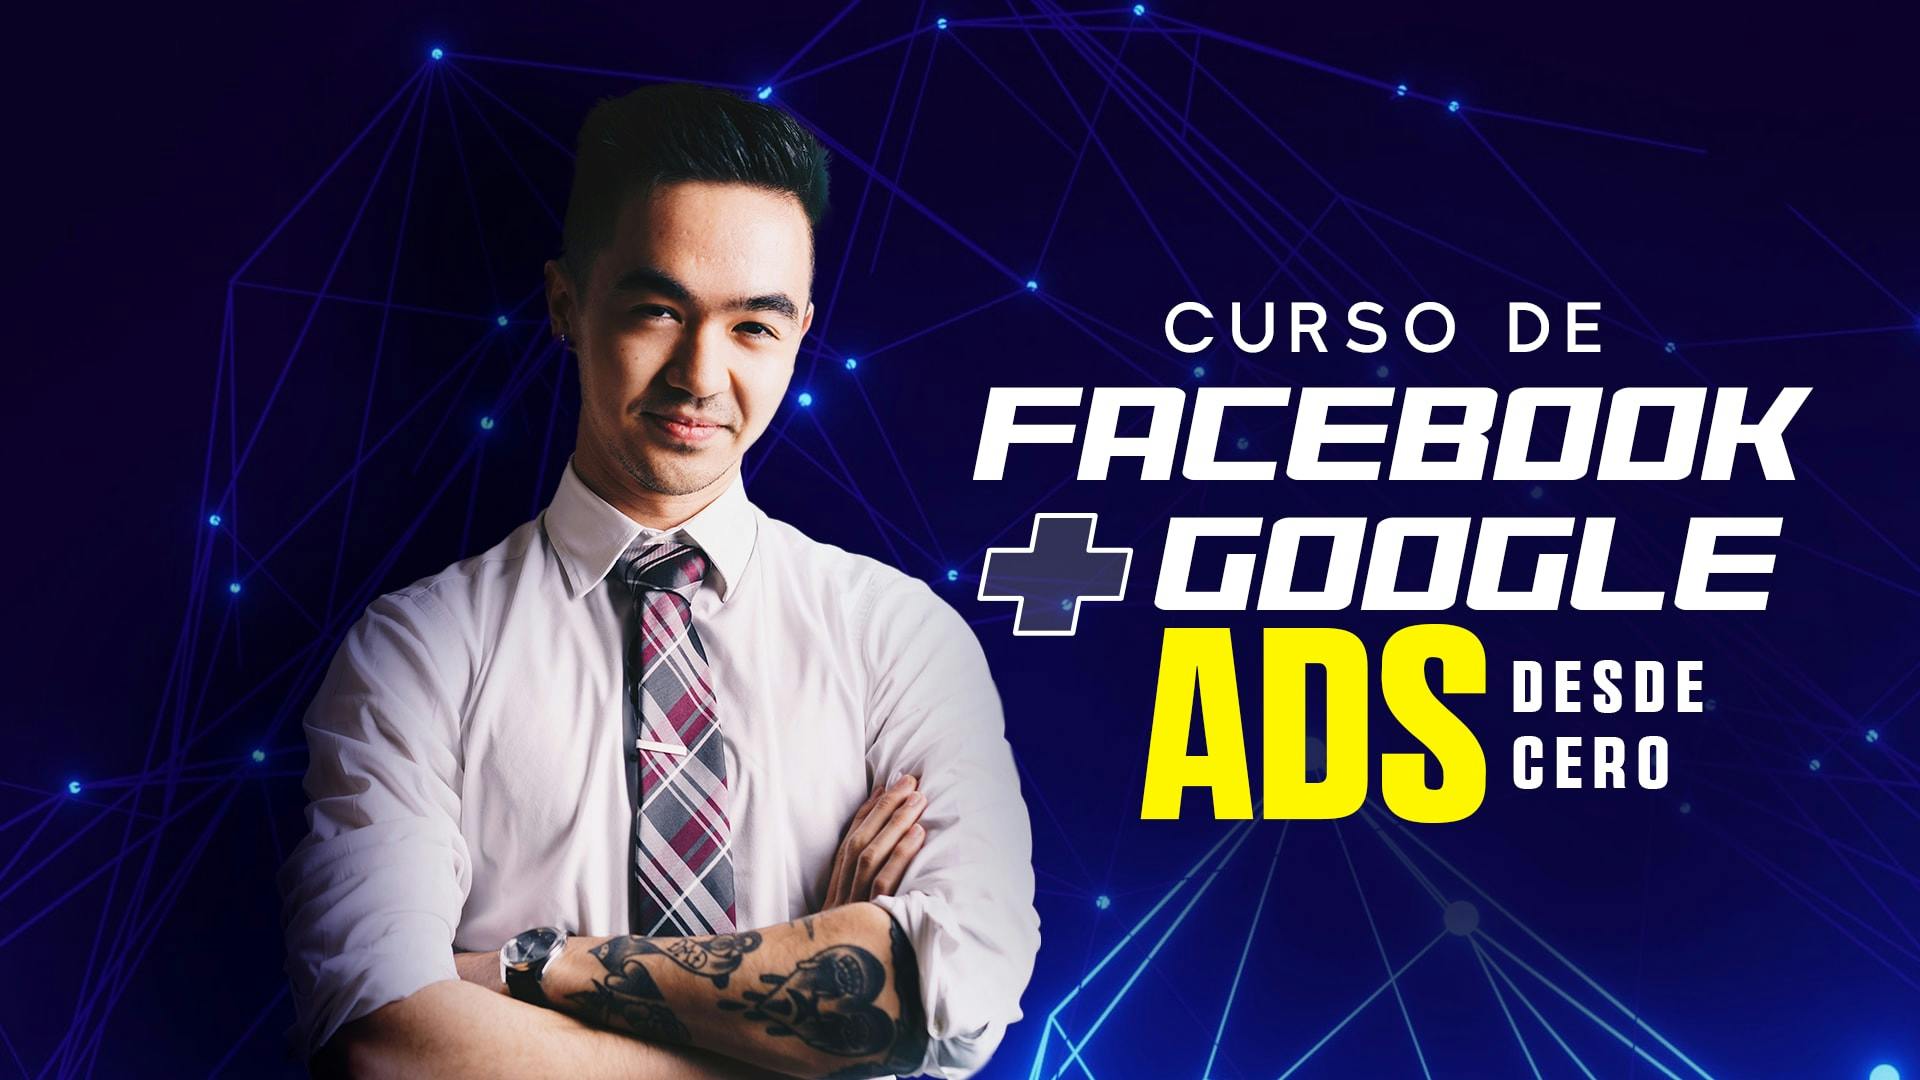 Curso de Facebook ADS y Google ADS